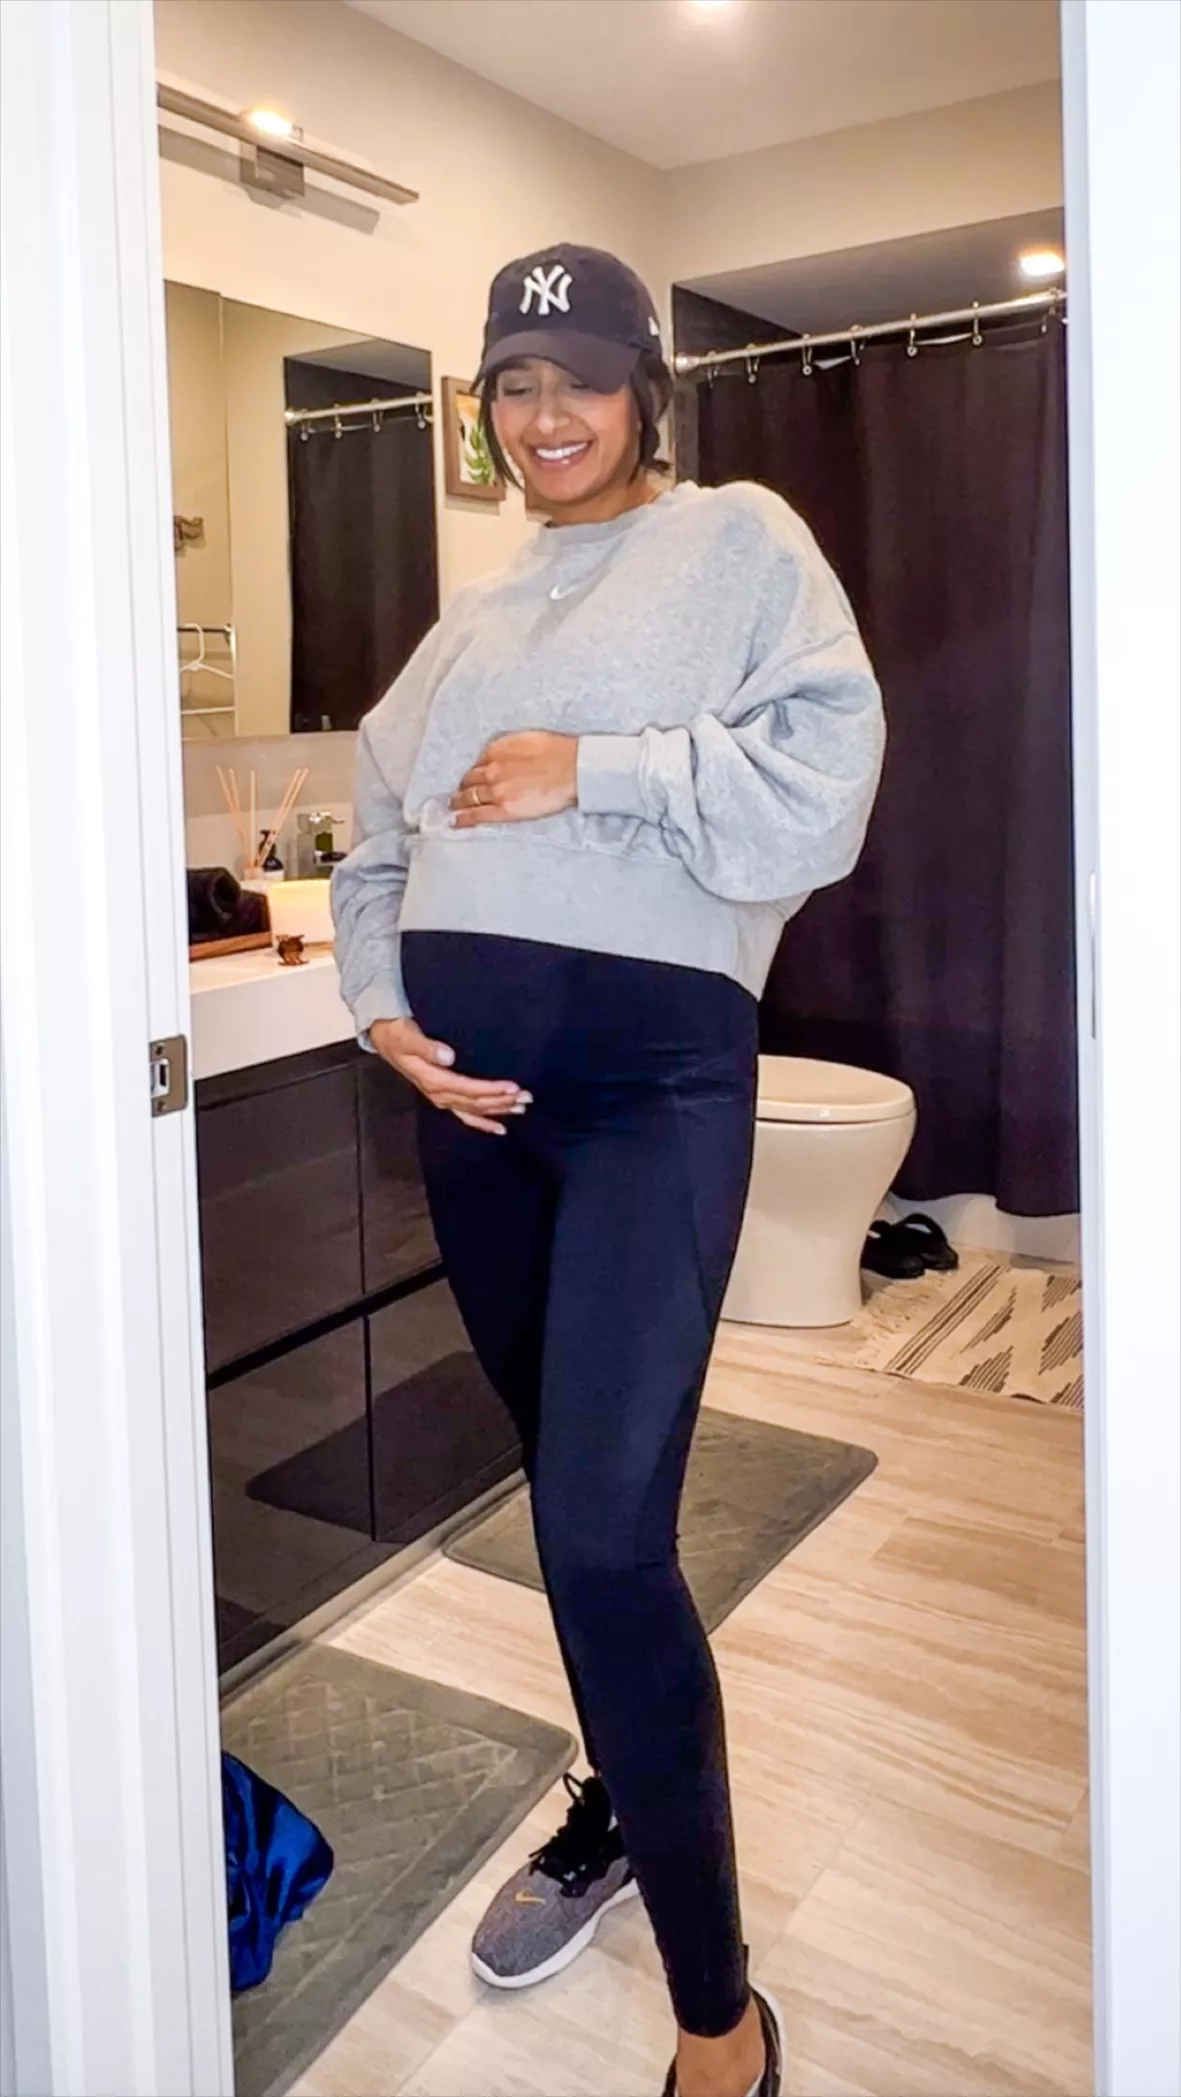 JOYSPELS Maternity Leggings Over The Belly Pregnancy Leggings for